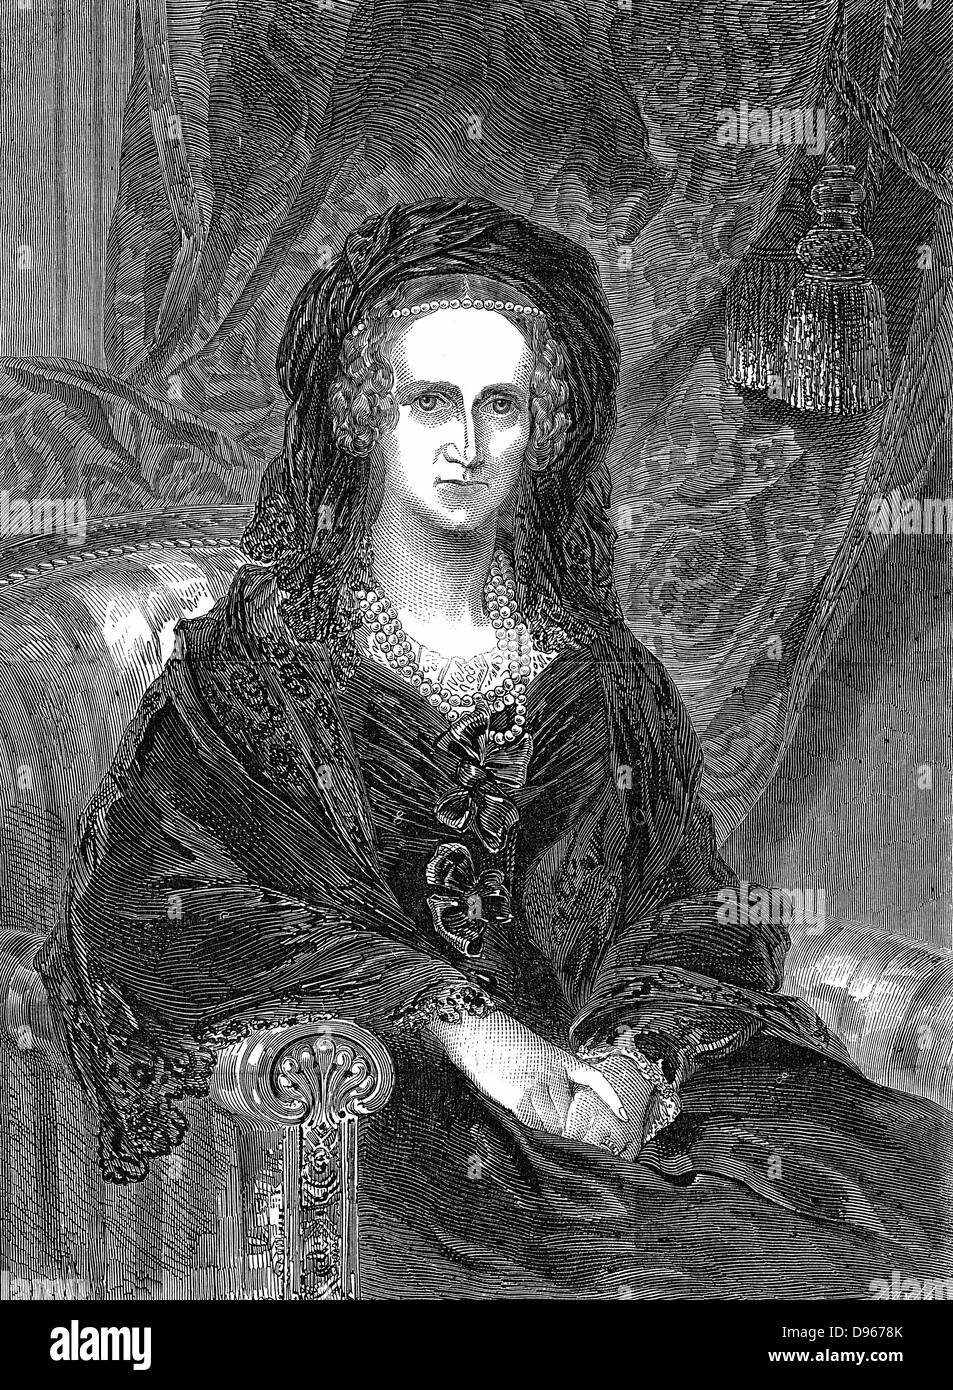 Adelaide von Sachsen-coburg Meiningen (1792-1849) German-born Queen Consort von Wilhelm IV. von Großbritannien (1830-37). Gravur von Adelaide wie eine Witwe 1849 veröffentlicht. Stockfoto